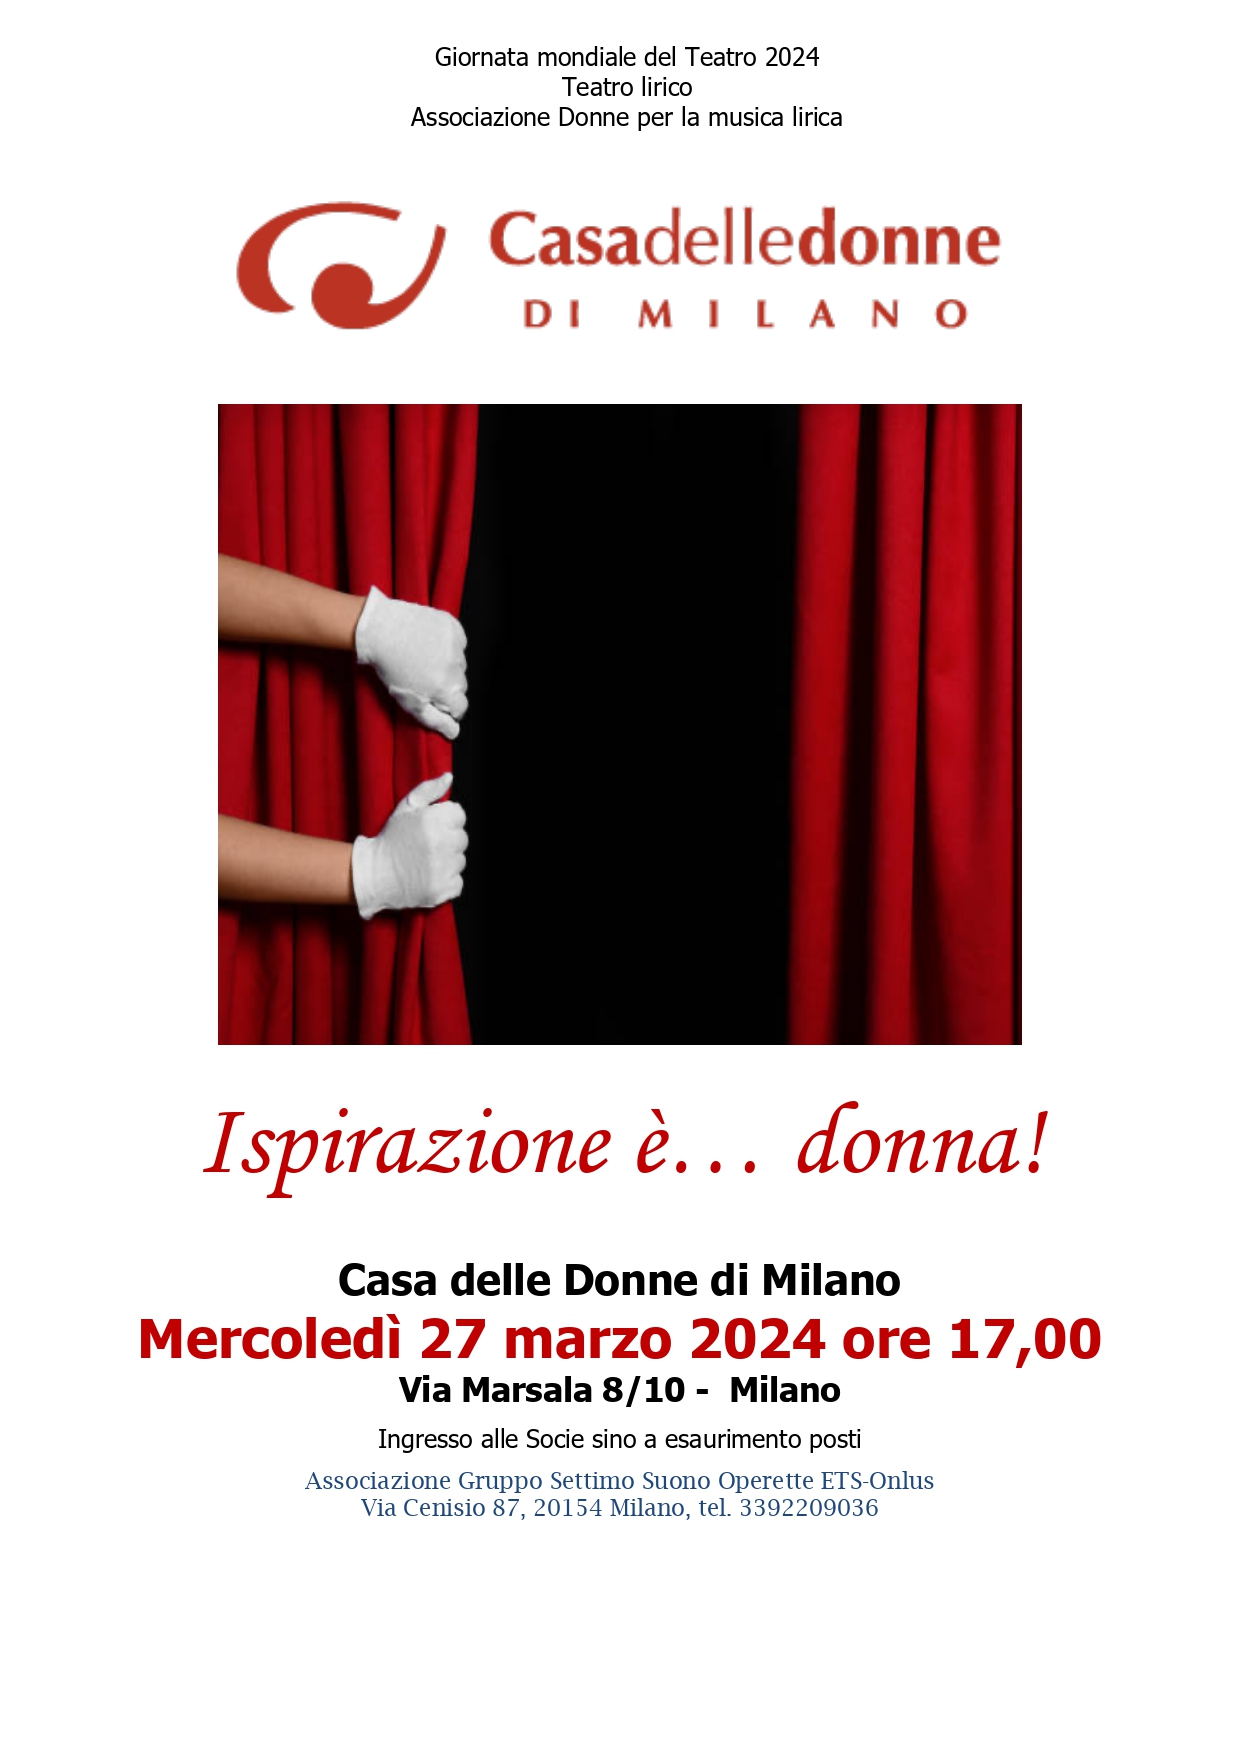 Concerto di Anna Dell'Orto in occasione della Giornata Nazionale del Teatro, per il Teatro Lirico "Ispirazione è donna" @ Casa delle Donne di Milano